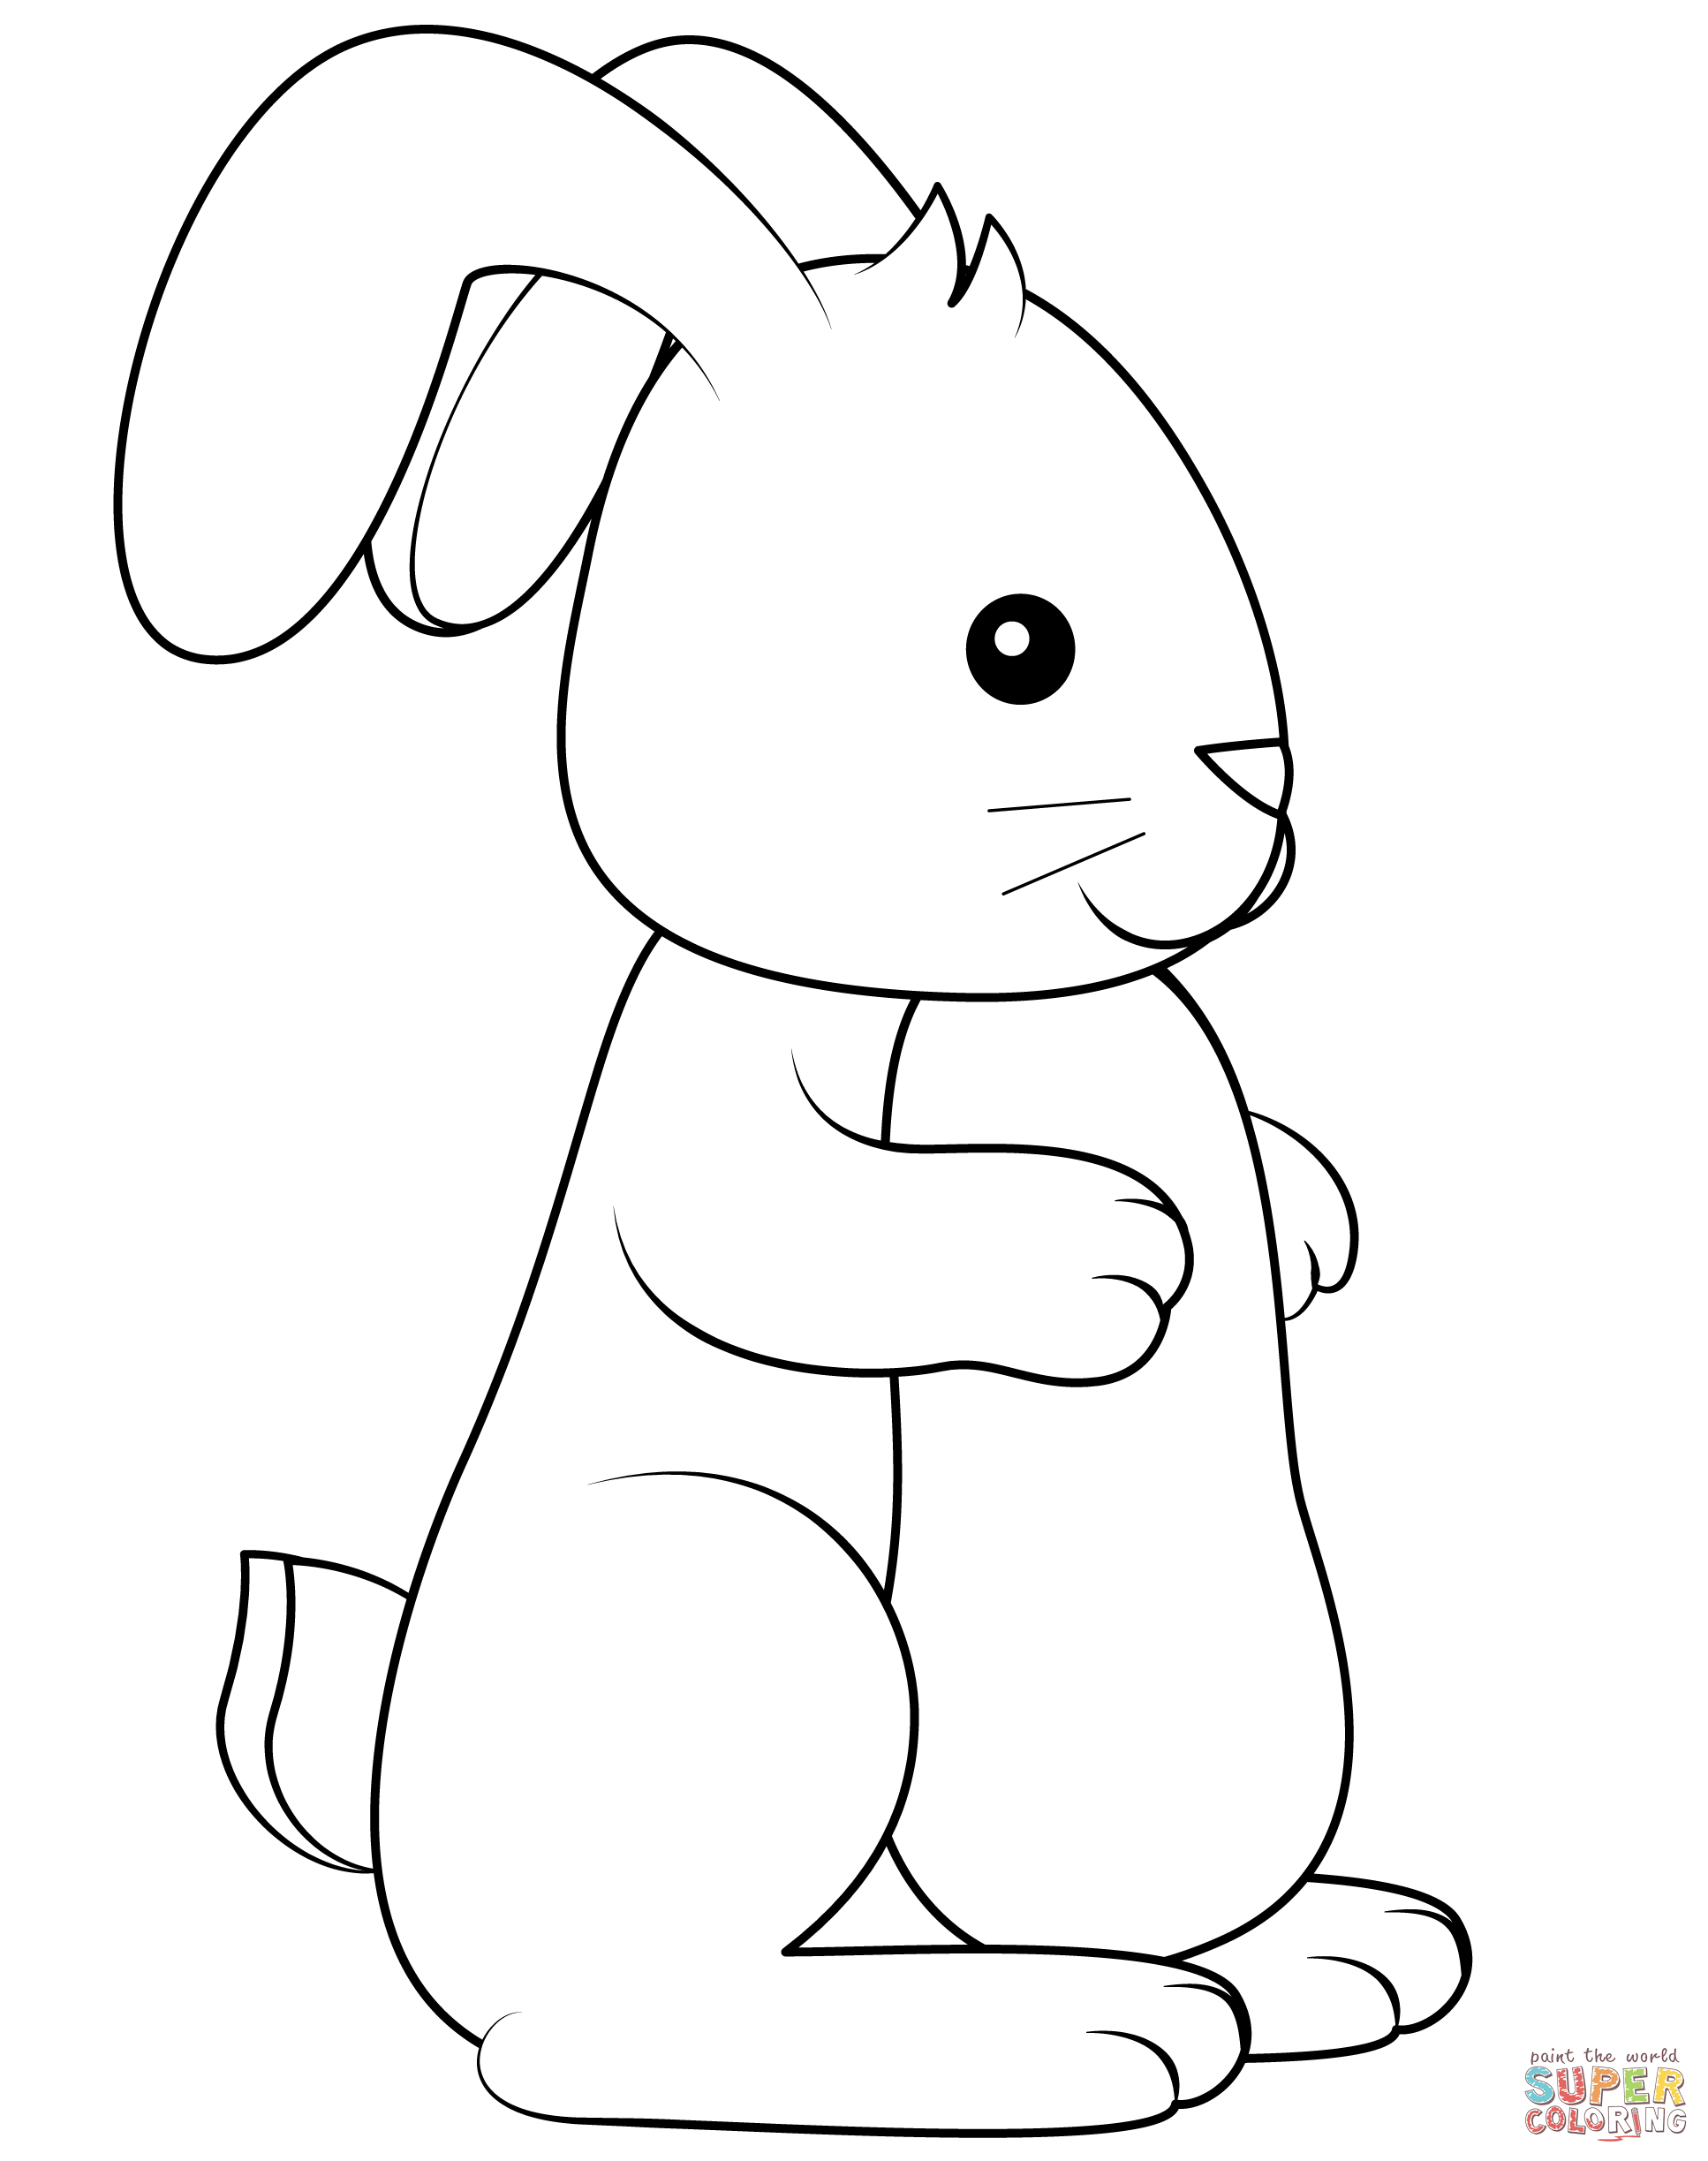 Desenho de coelho para colorir desenhos para colorir e imprimir gratis